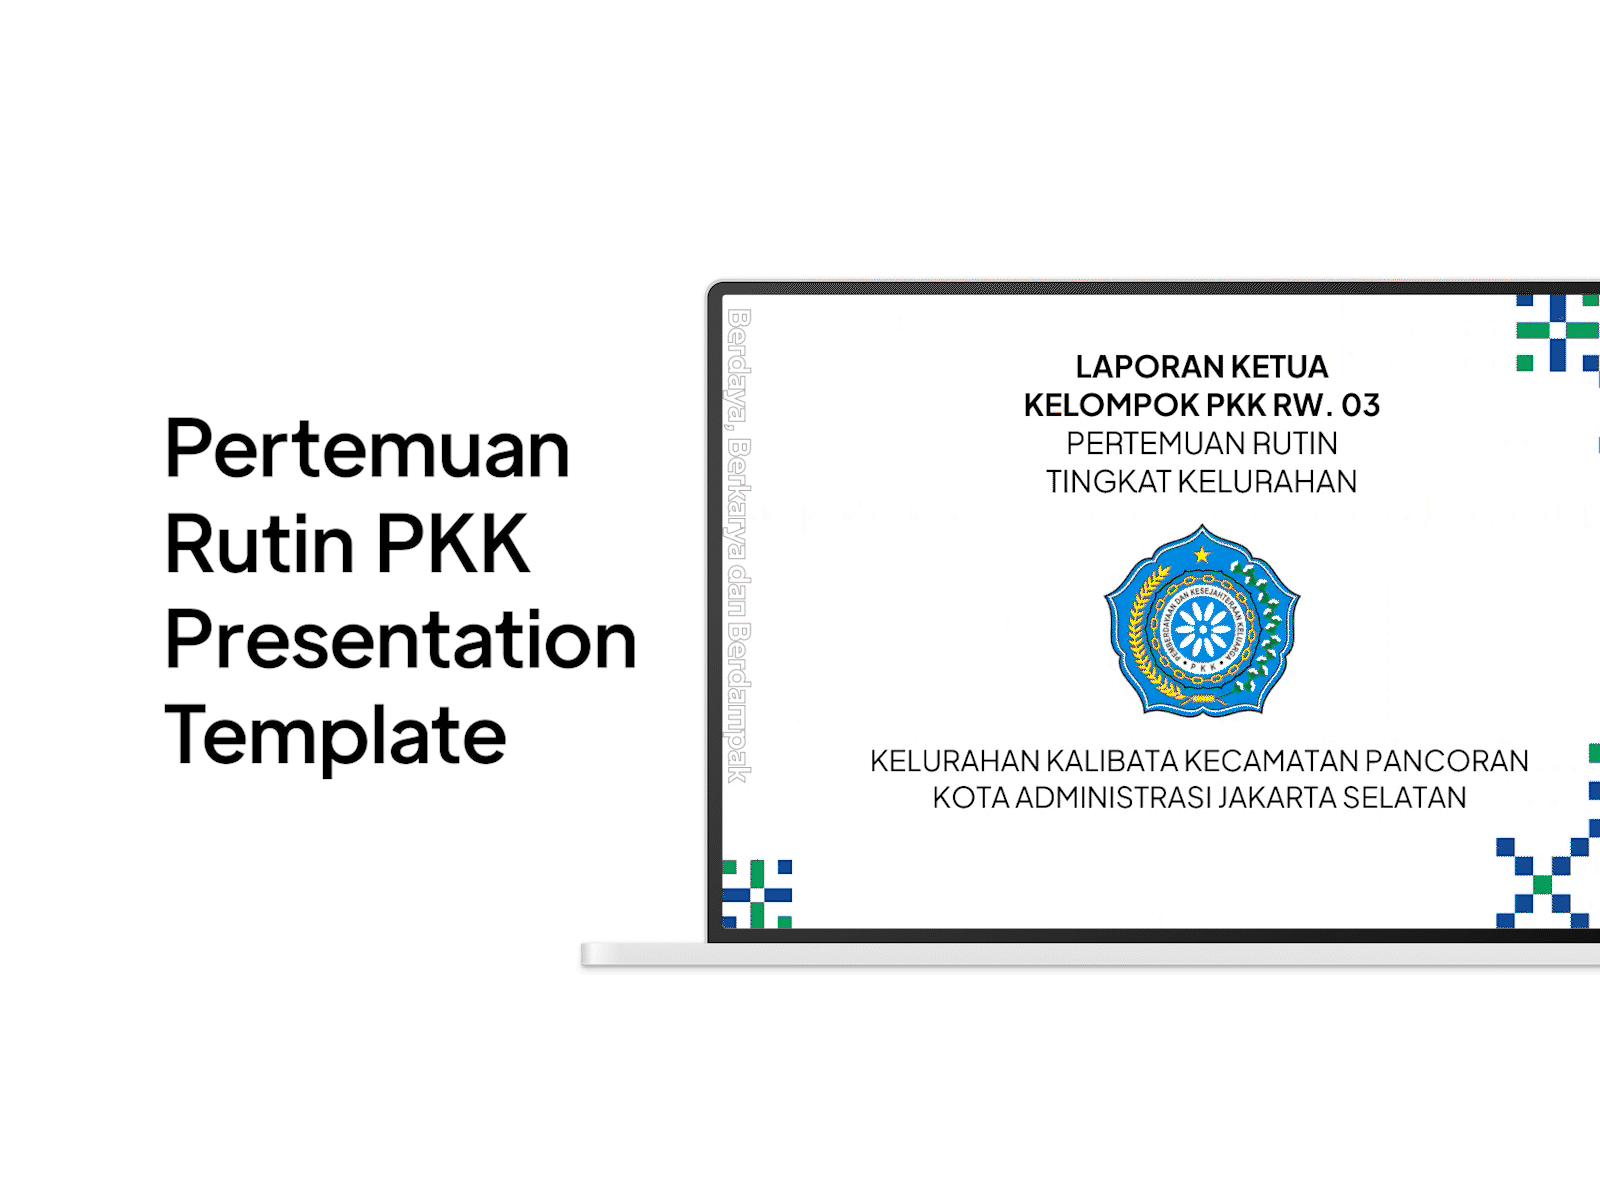 Pertemuan Rutin PKK Presentation Template graphic design presentation template